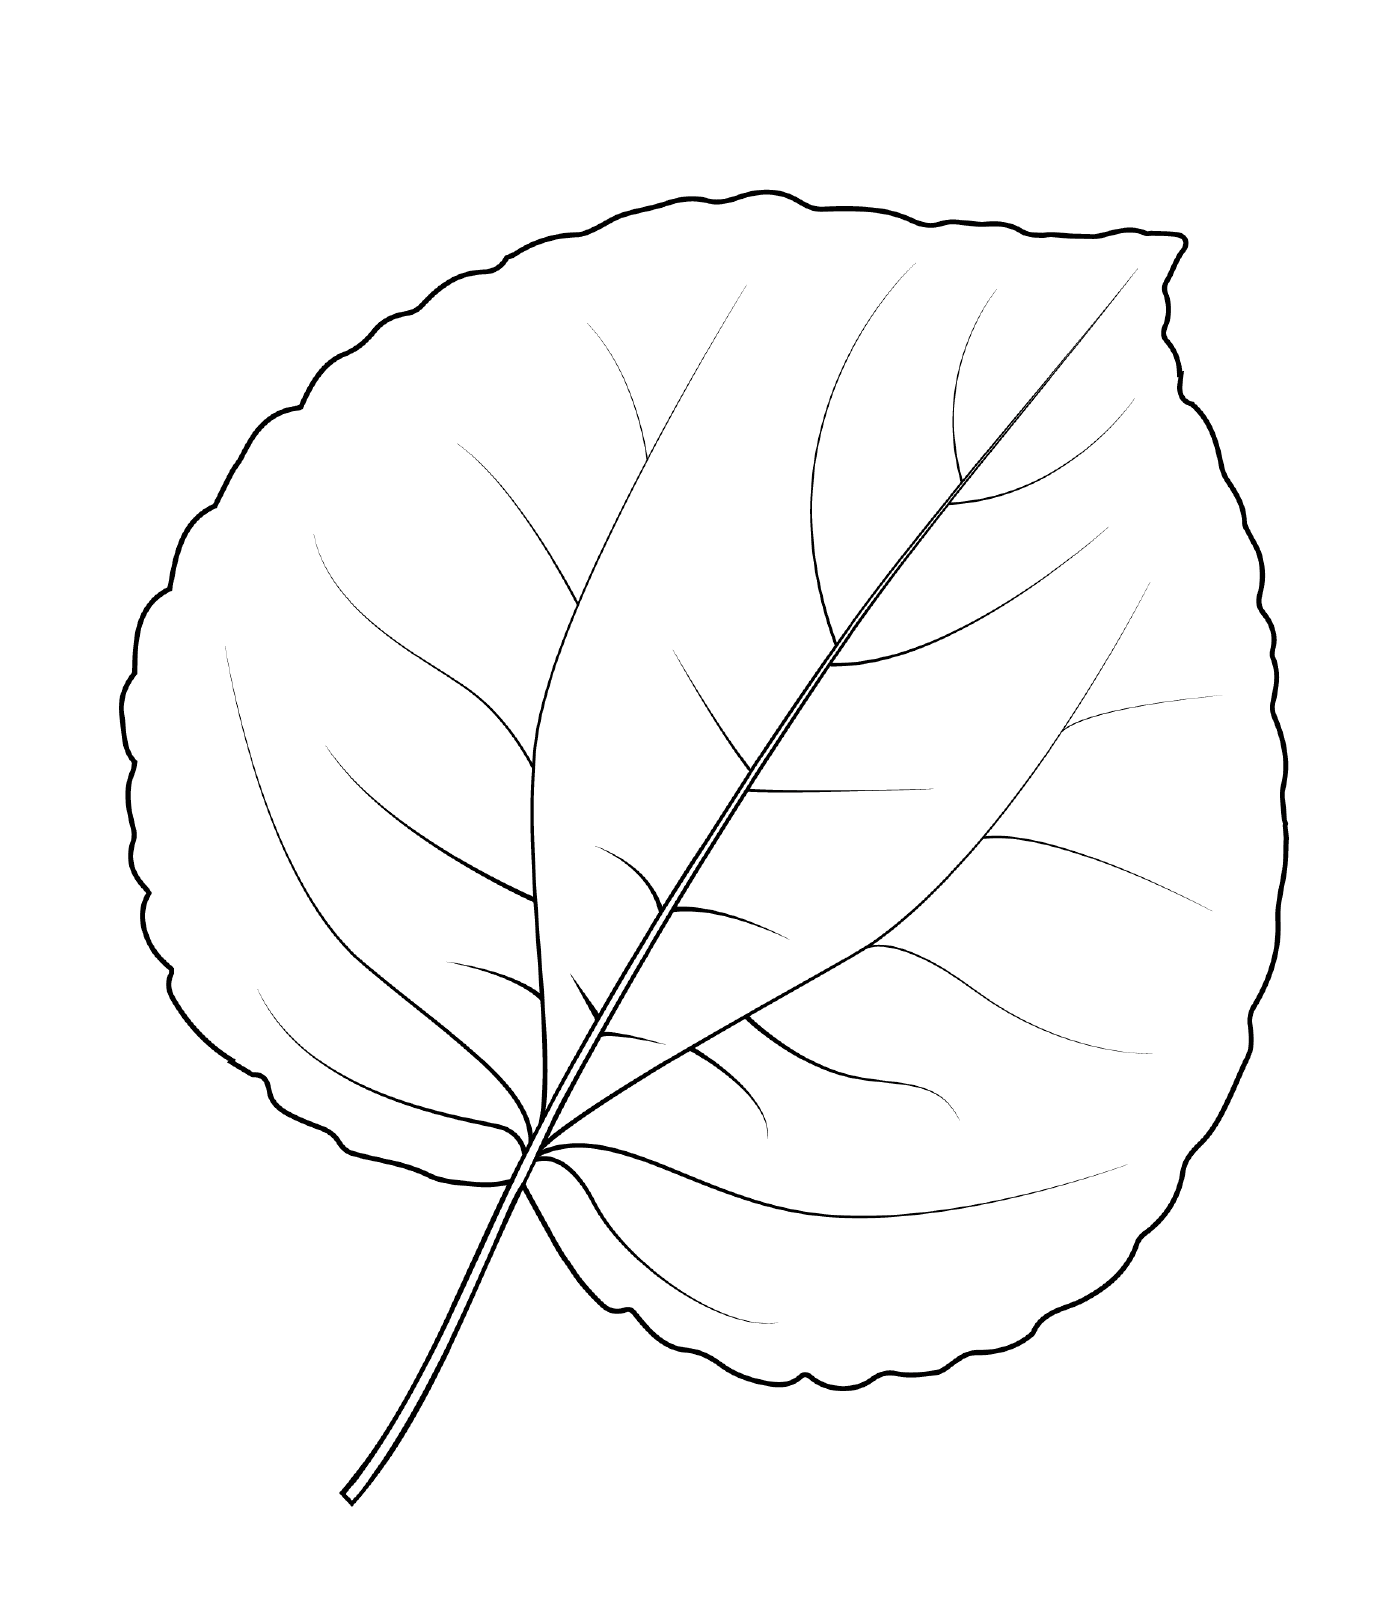  Shaft leaf katsura 